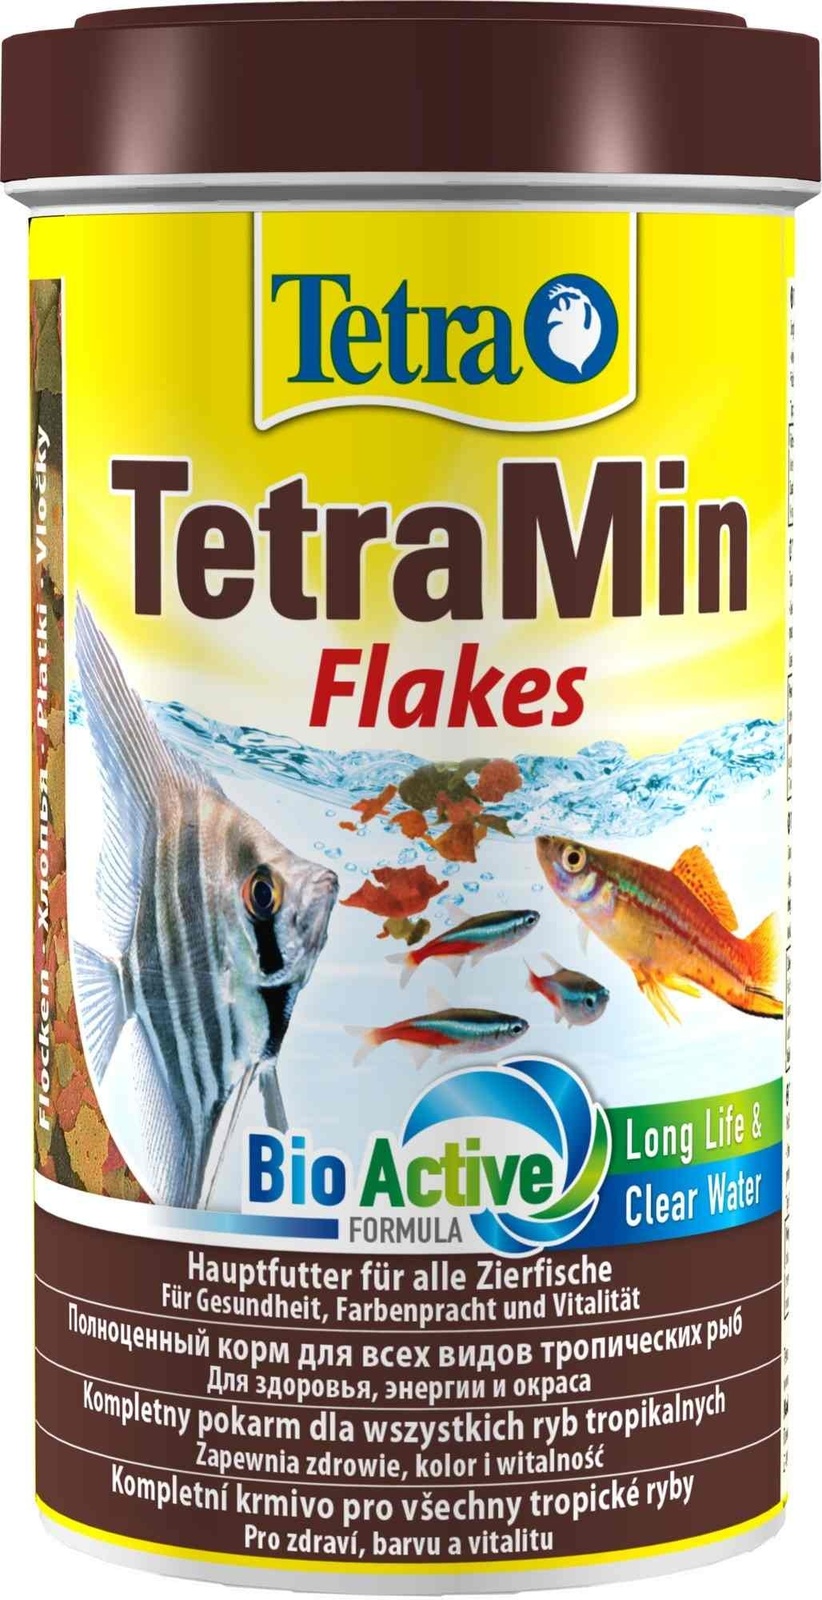 Tetra (корма) Tetra (корма) корм для всех видов тропических рыб. хлопья TetraMin Flakes (100 г) tetra корма tetra корма для золотых и холодноводных рыб хлопья 200 г